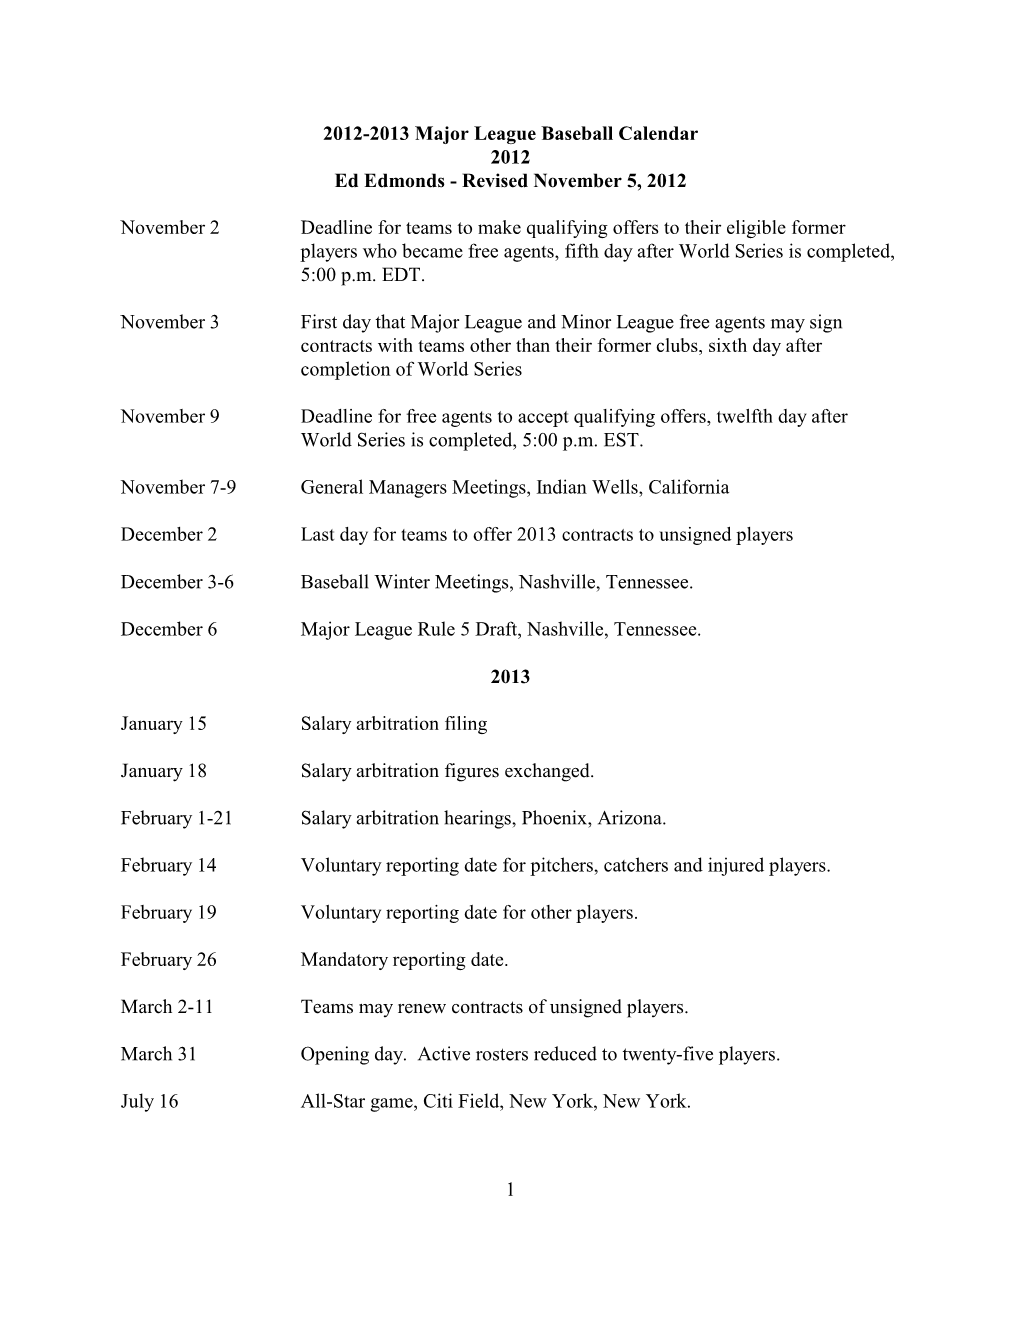 2012-2013 Major League Baseball Calendar 2012 Ed Edmonds - Revised November 5, 2012